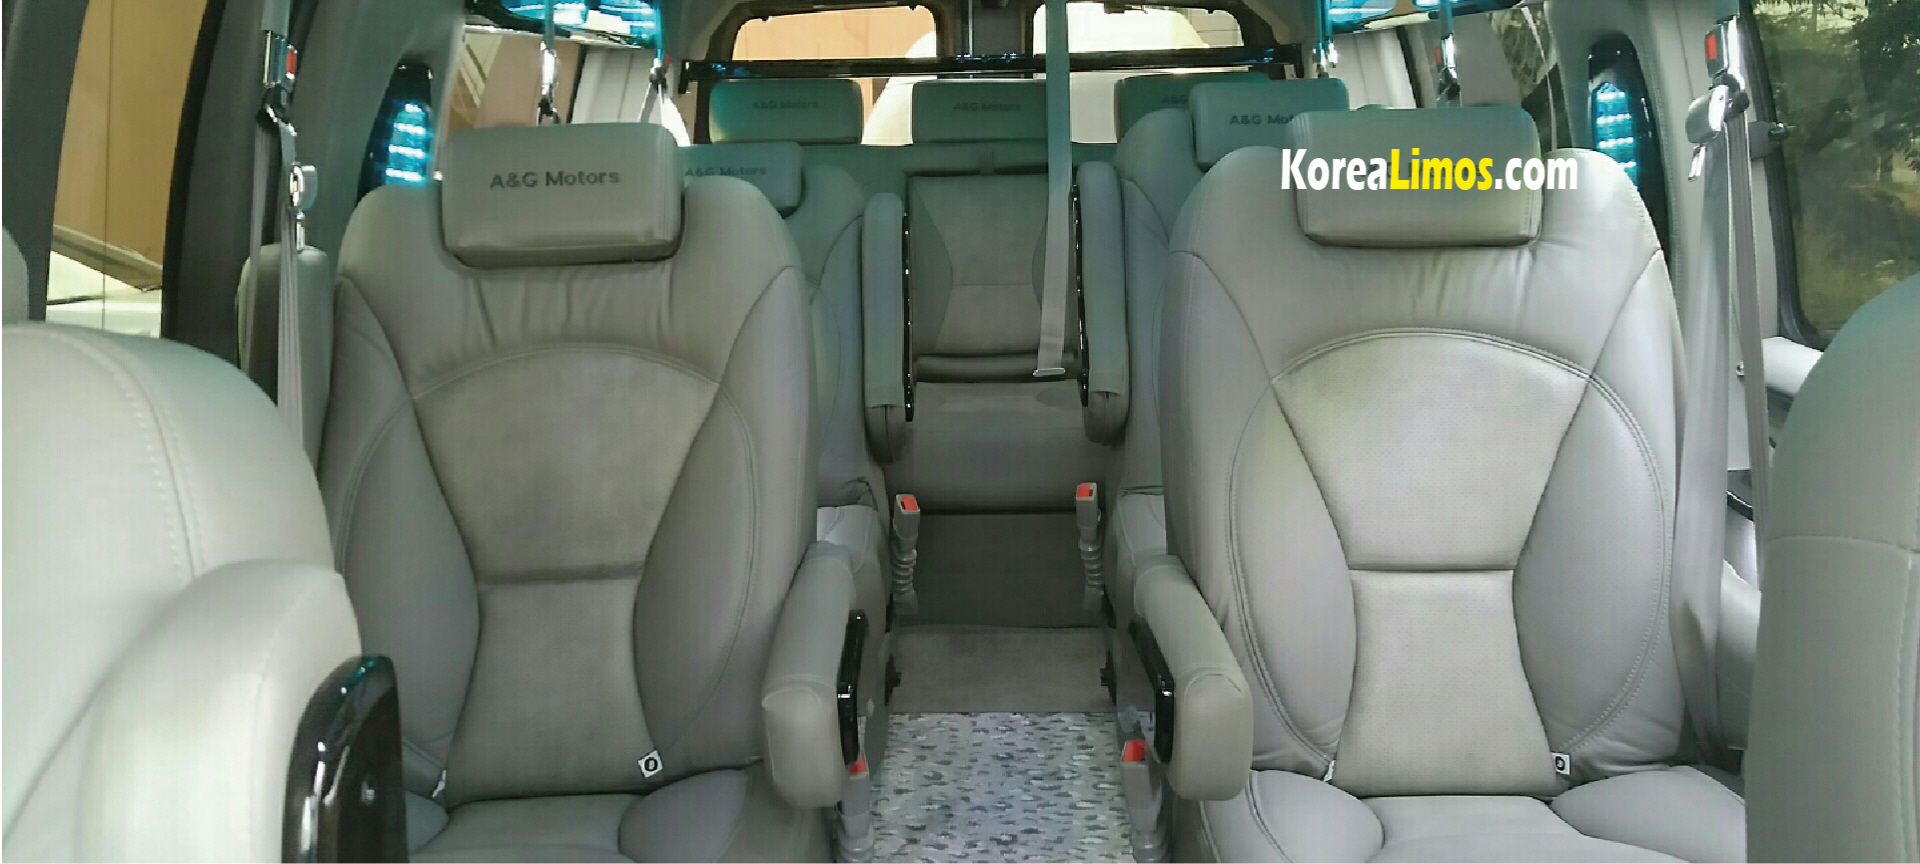 Korea van rental with driver